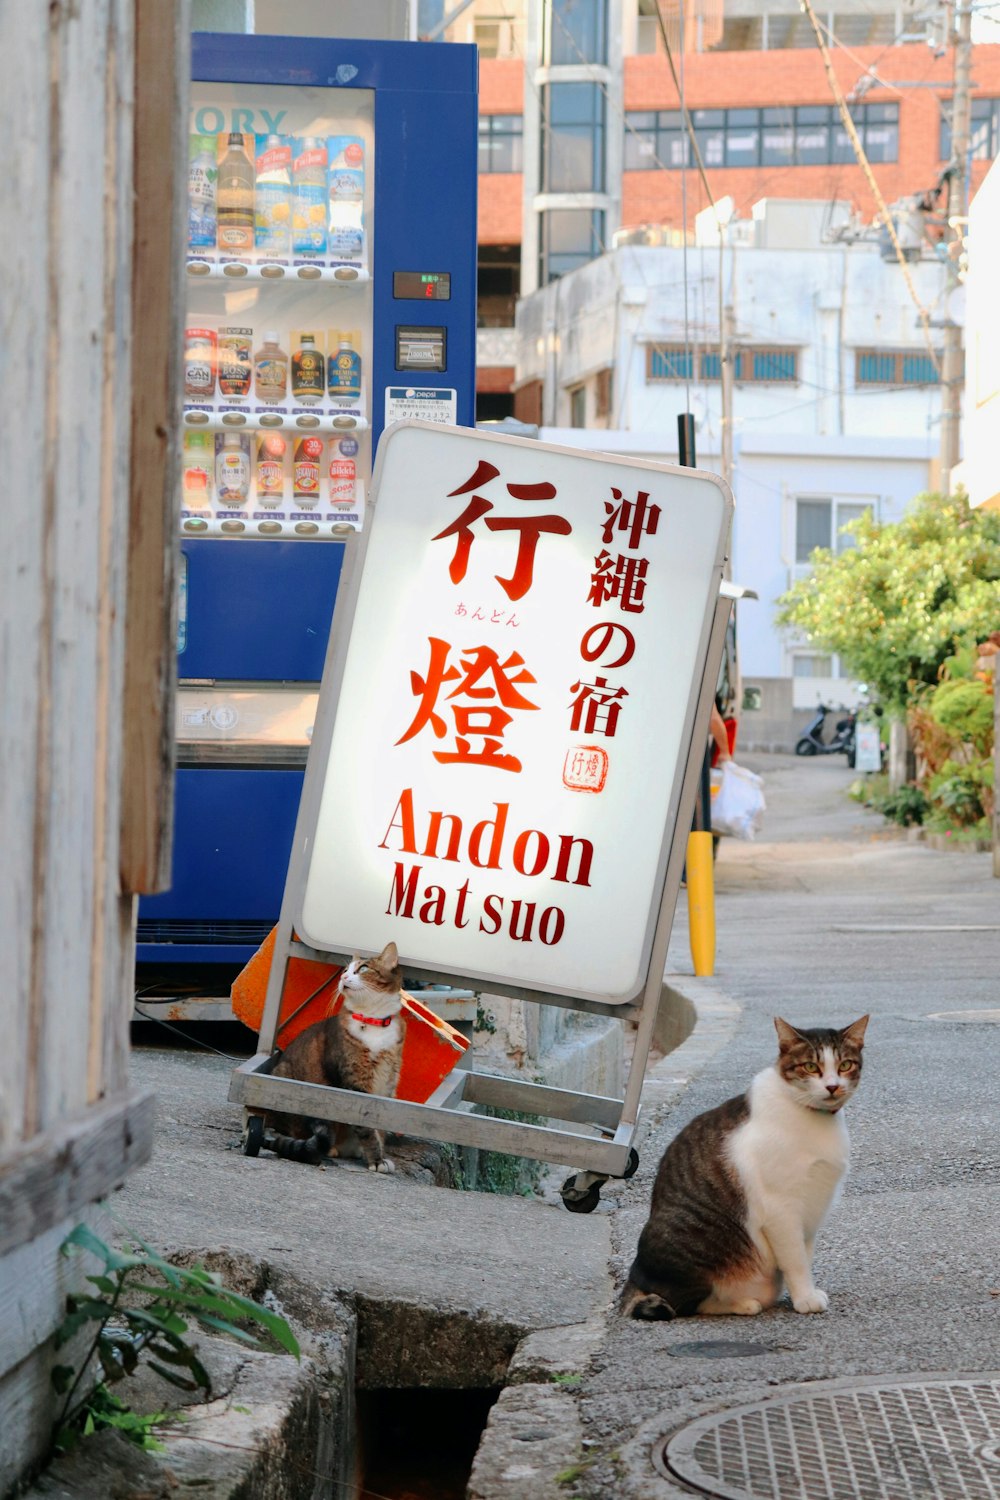 Katze sitzt in der Nähe der Kanji-Beschilderung